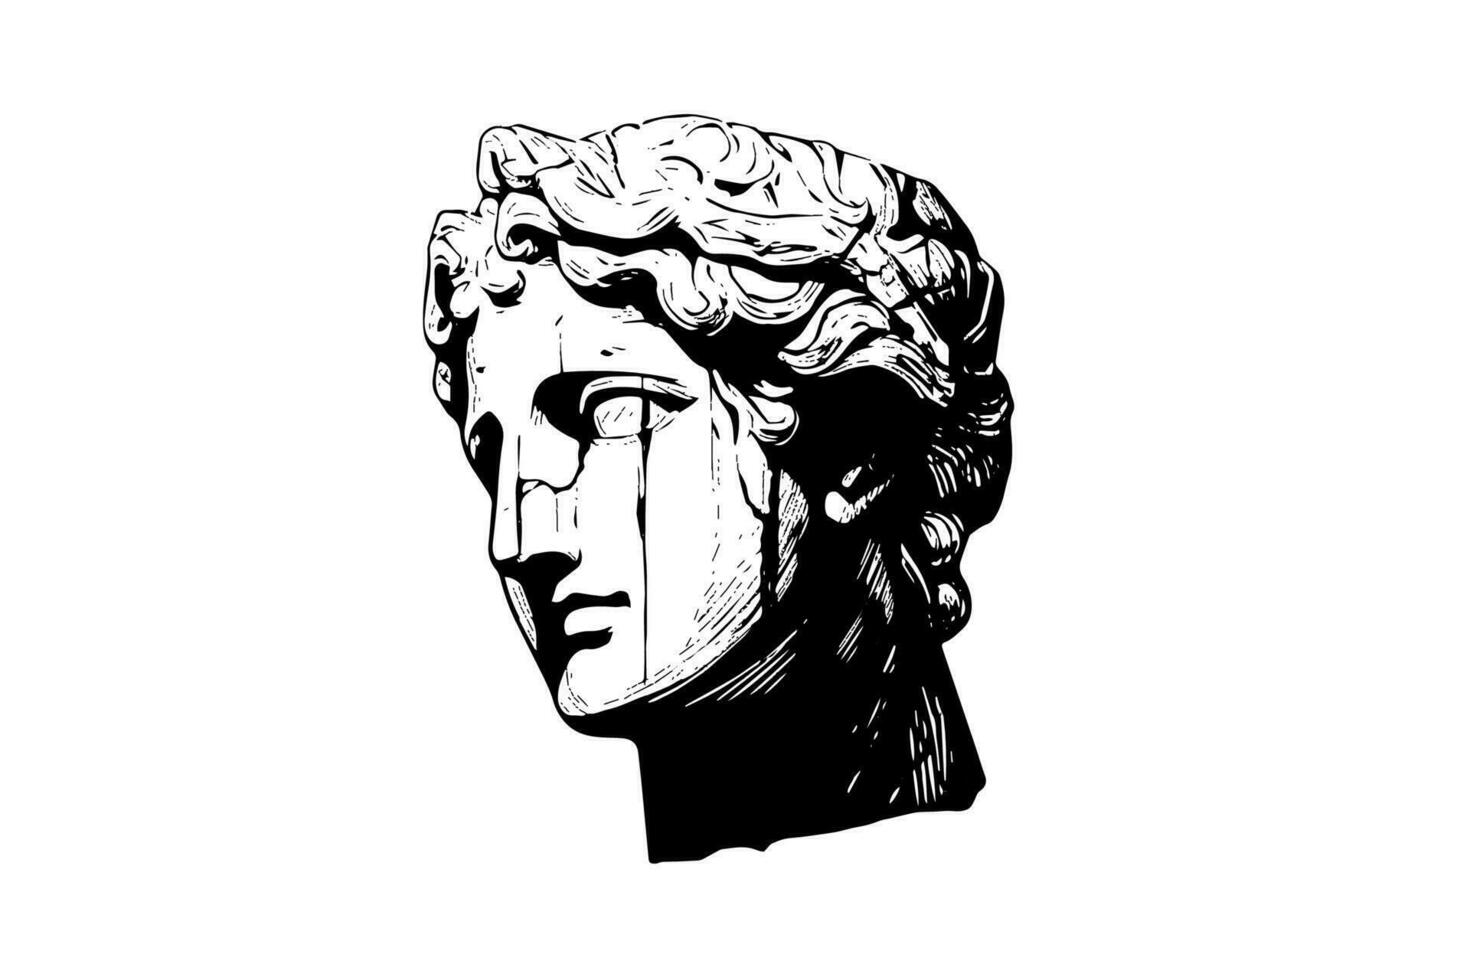 Cracked statua testa di greco scultura schizzo incisione stile vettore illustrazione.